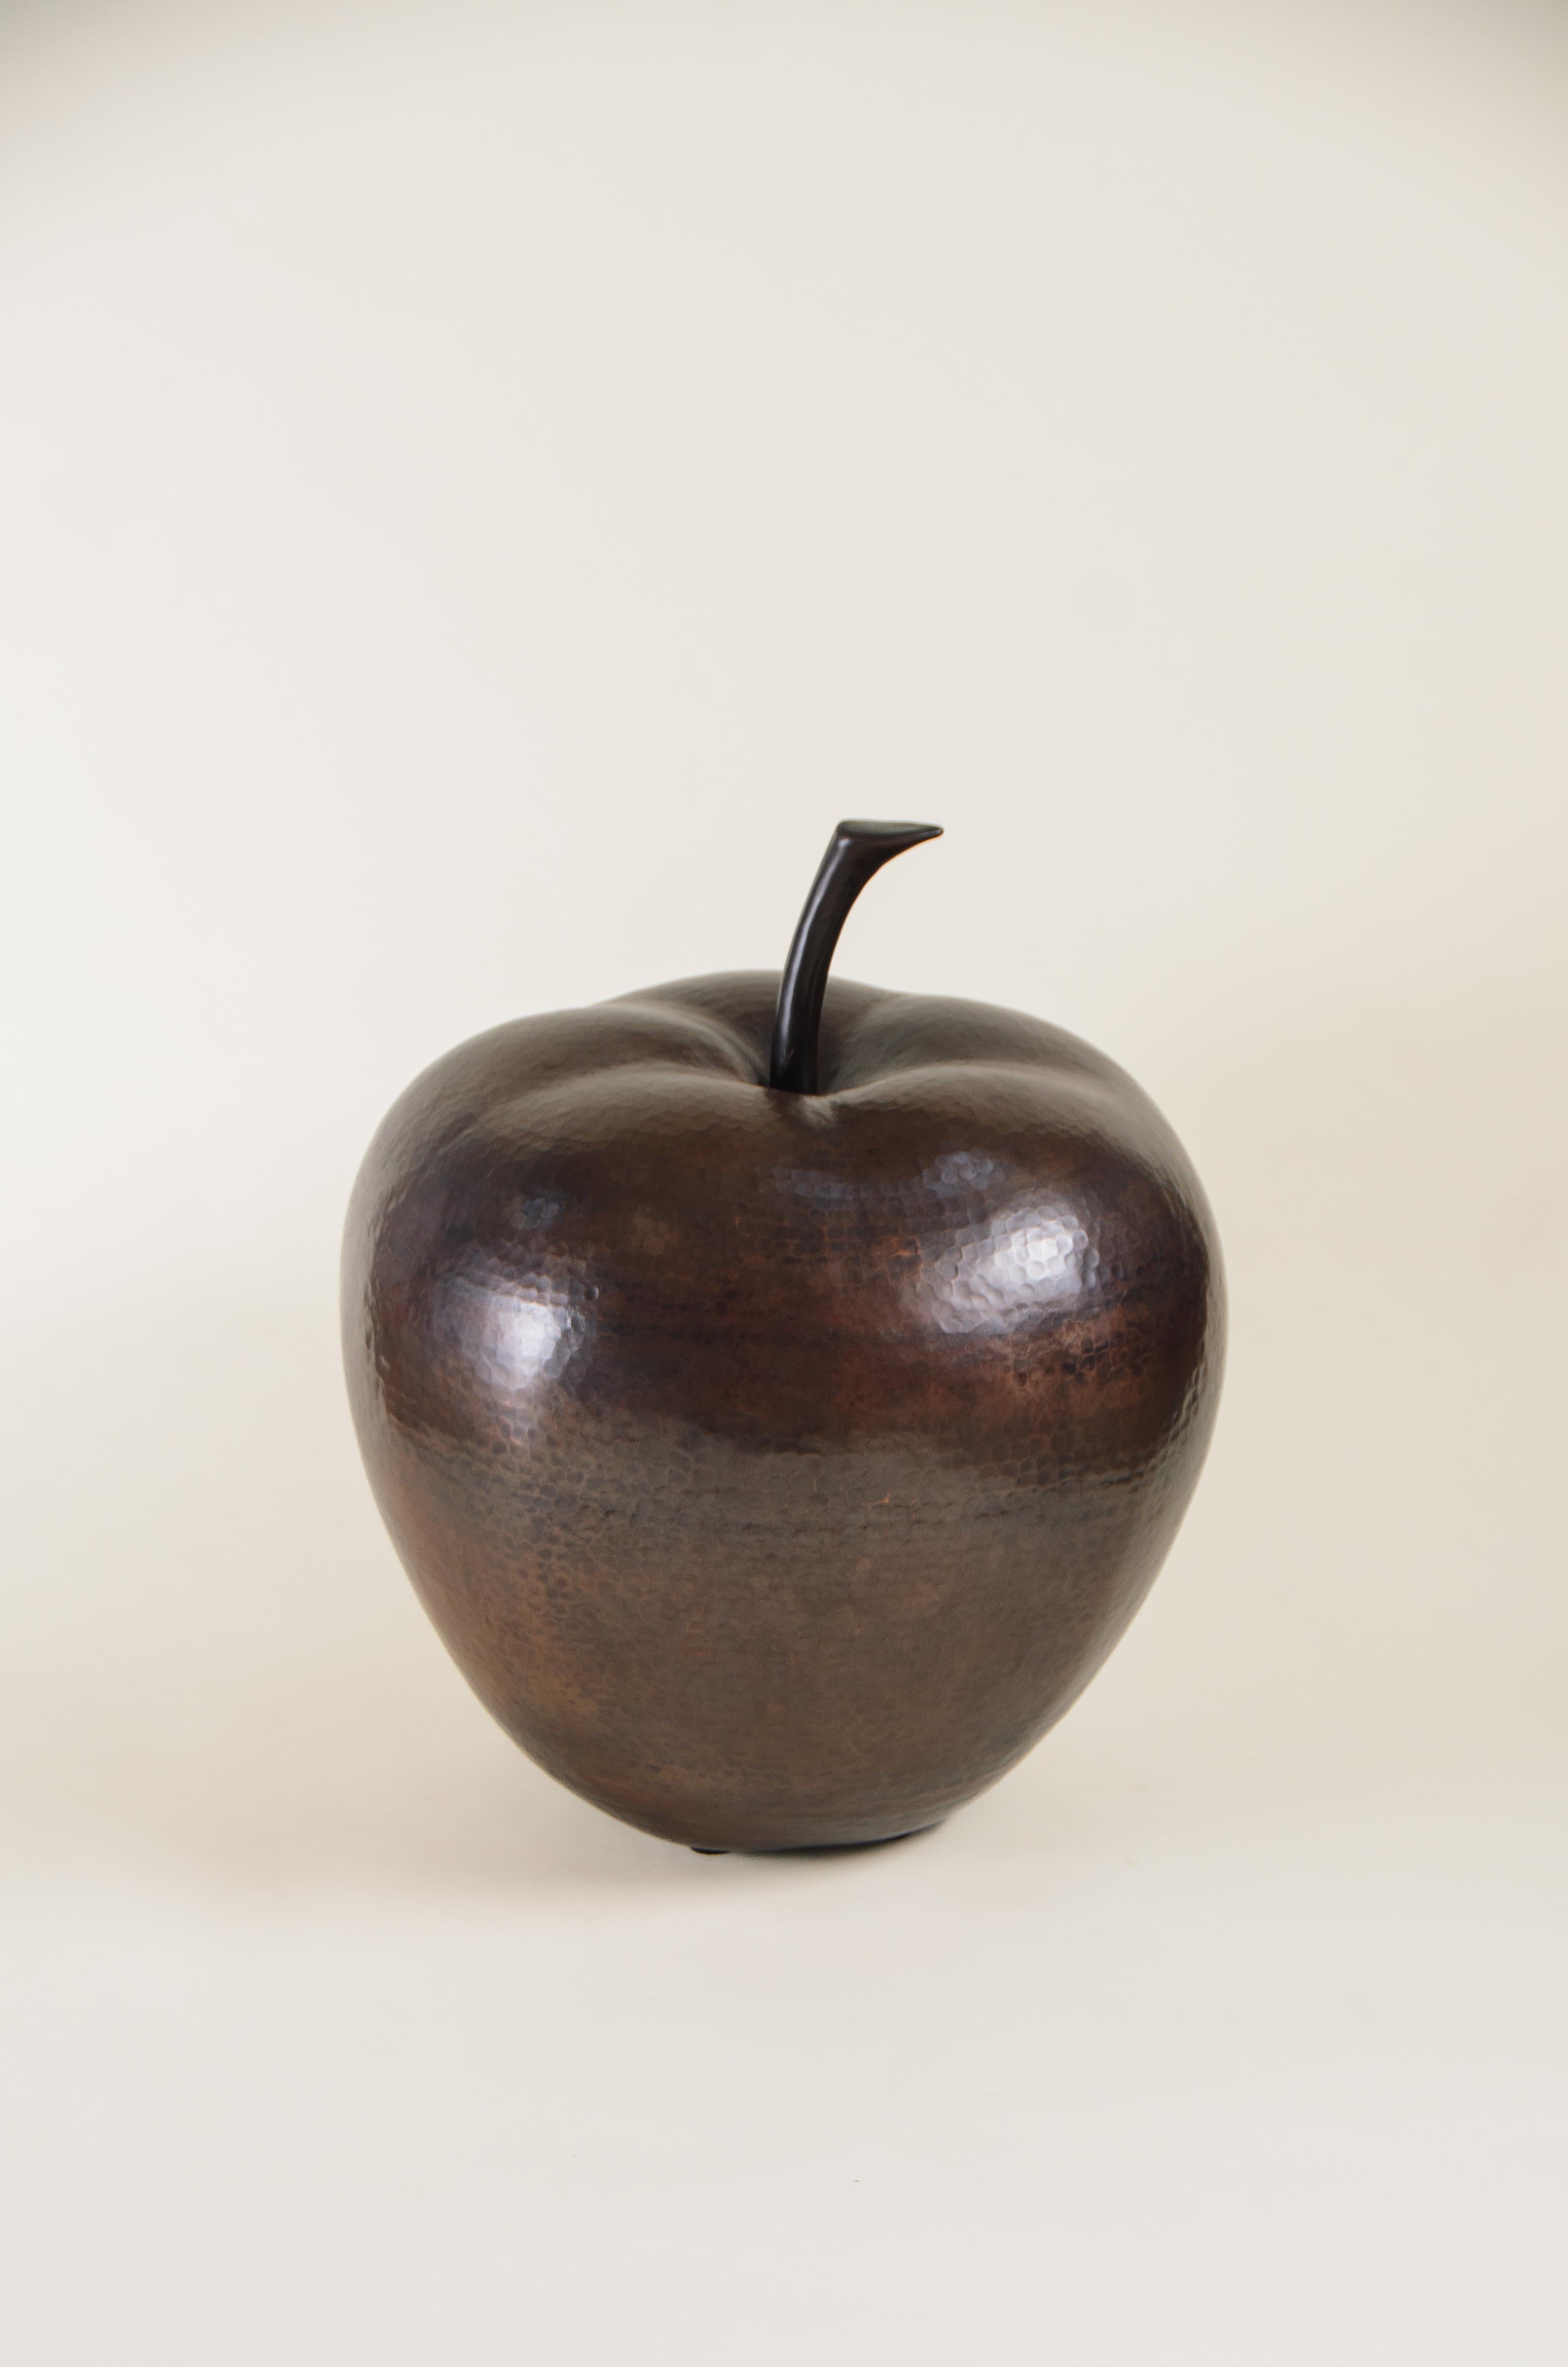 Apfel-Skulptur
Antik-Kupfer
Antikkupfer dunkel
Handrepousse
Limitierte Auflage
Jedes Stück wird individuell angefertigt und ist einzigartig. 

Repoussé ist die traditionelle Kunst, ein dekoratives Relief von Hand auf ein Blech zu hämmern. Die